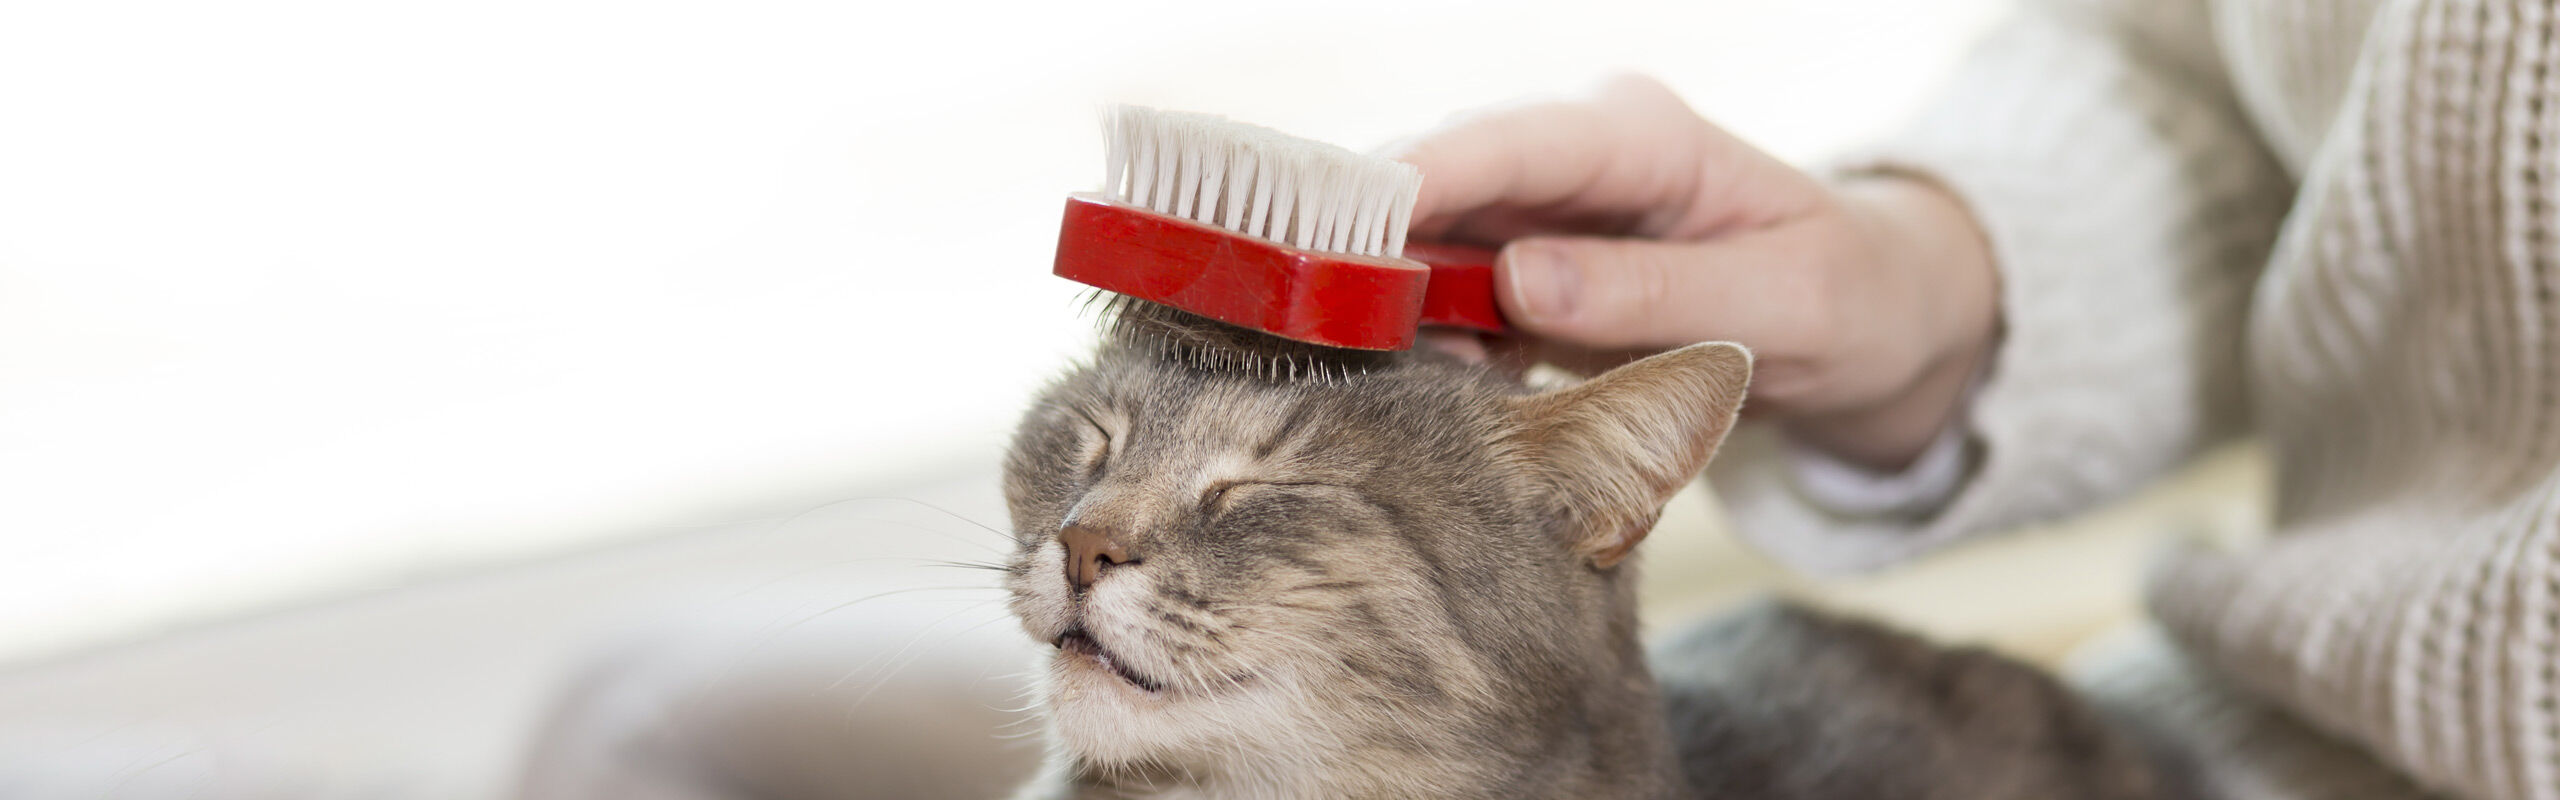 Fellpflege für Katzen